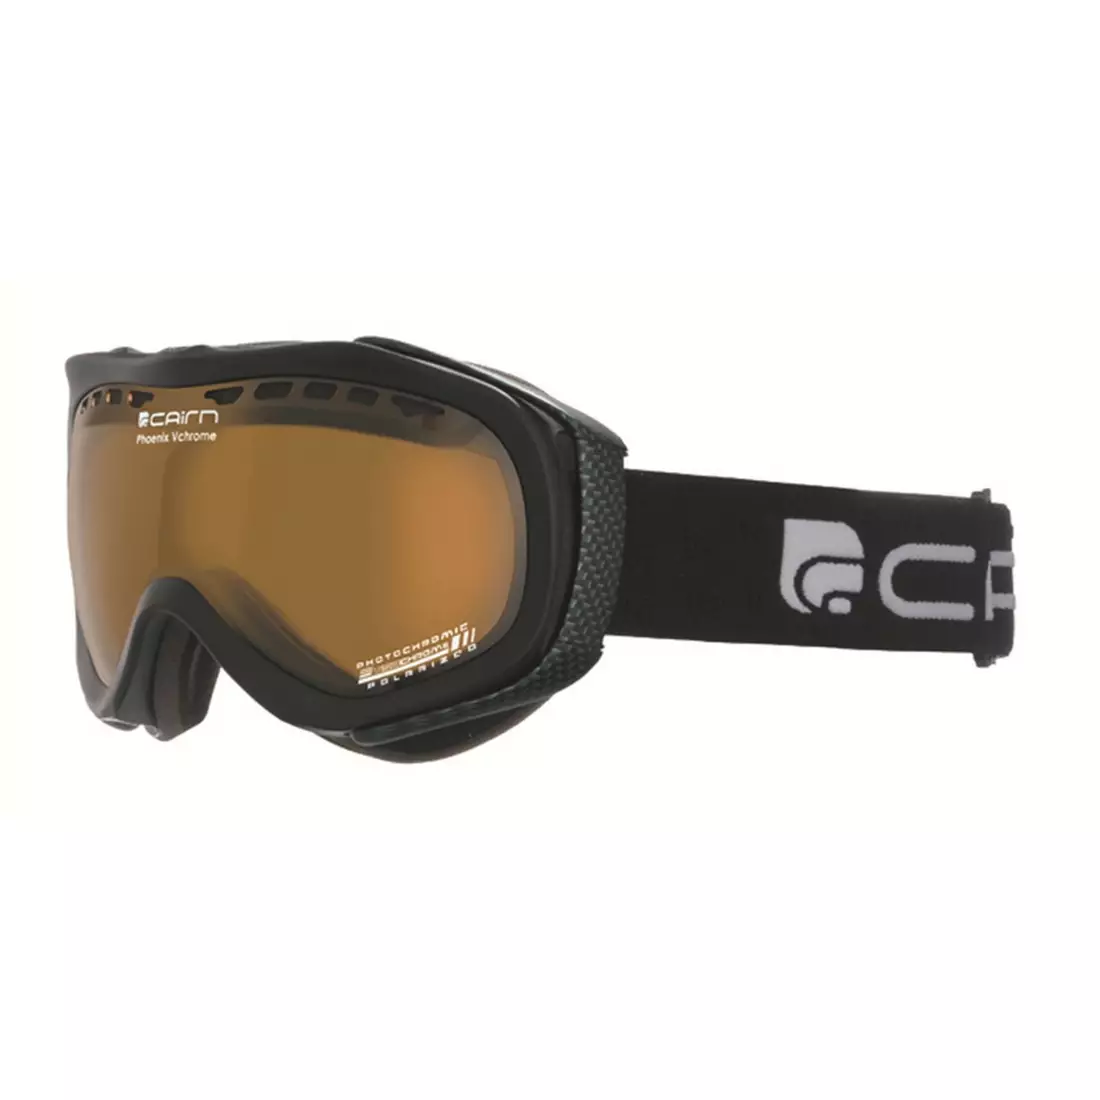 CAIRN gogle narciarskie/snowboardowe Phoenix VCHROME 202, black, 580628202